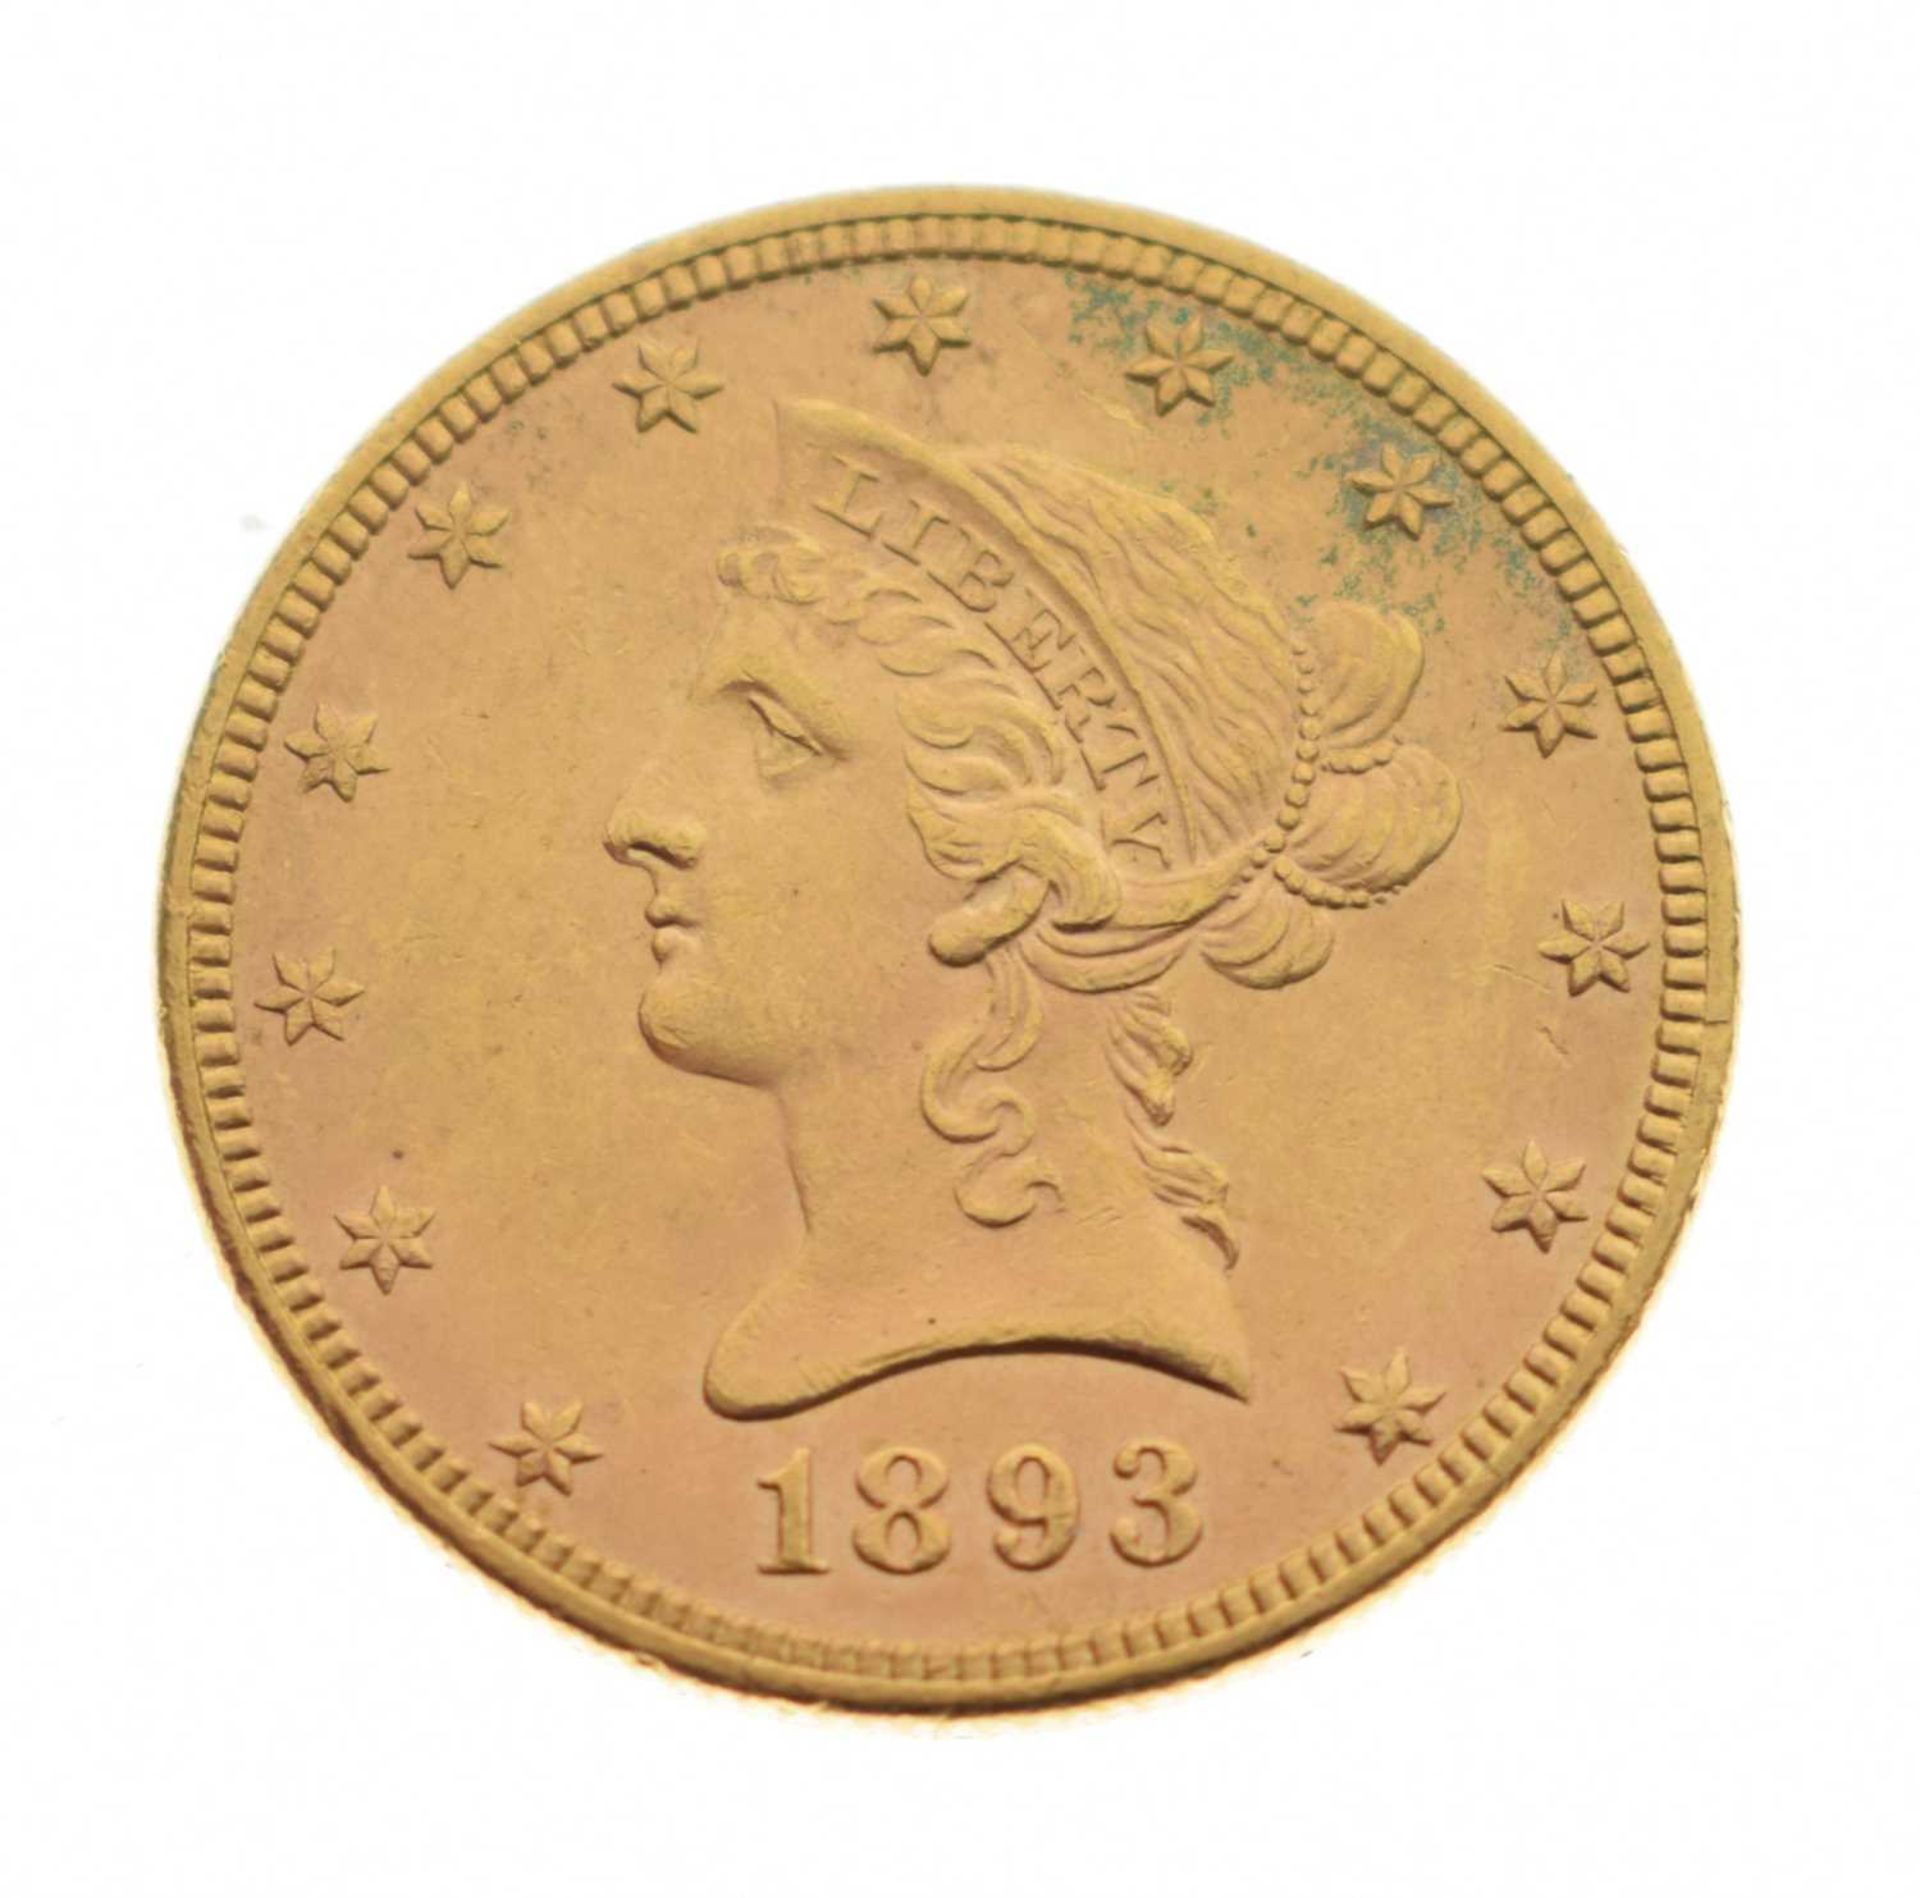 USA ten dollar gold coin, liberty head, 1893